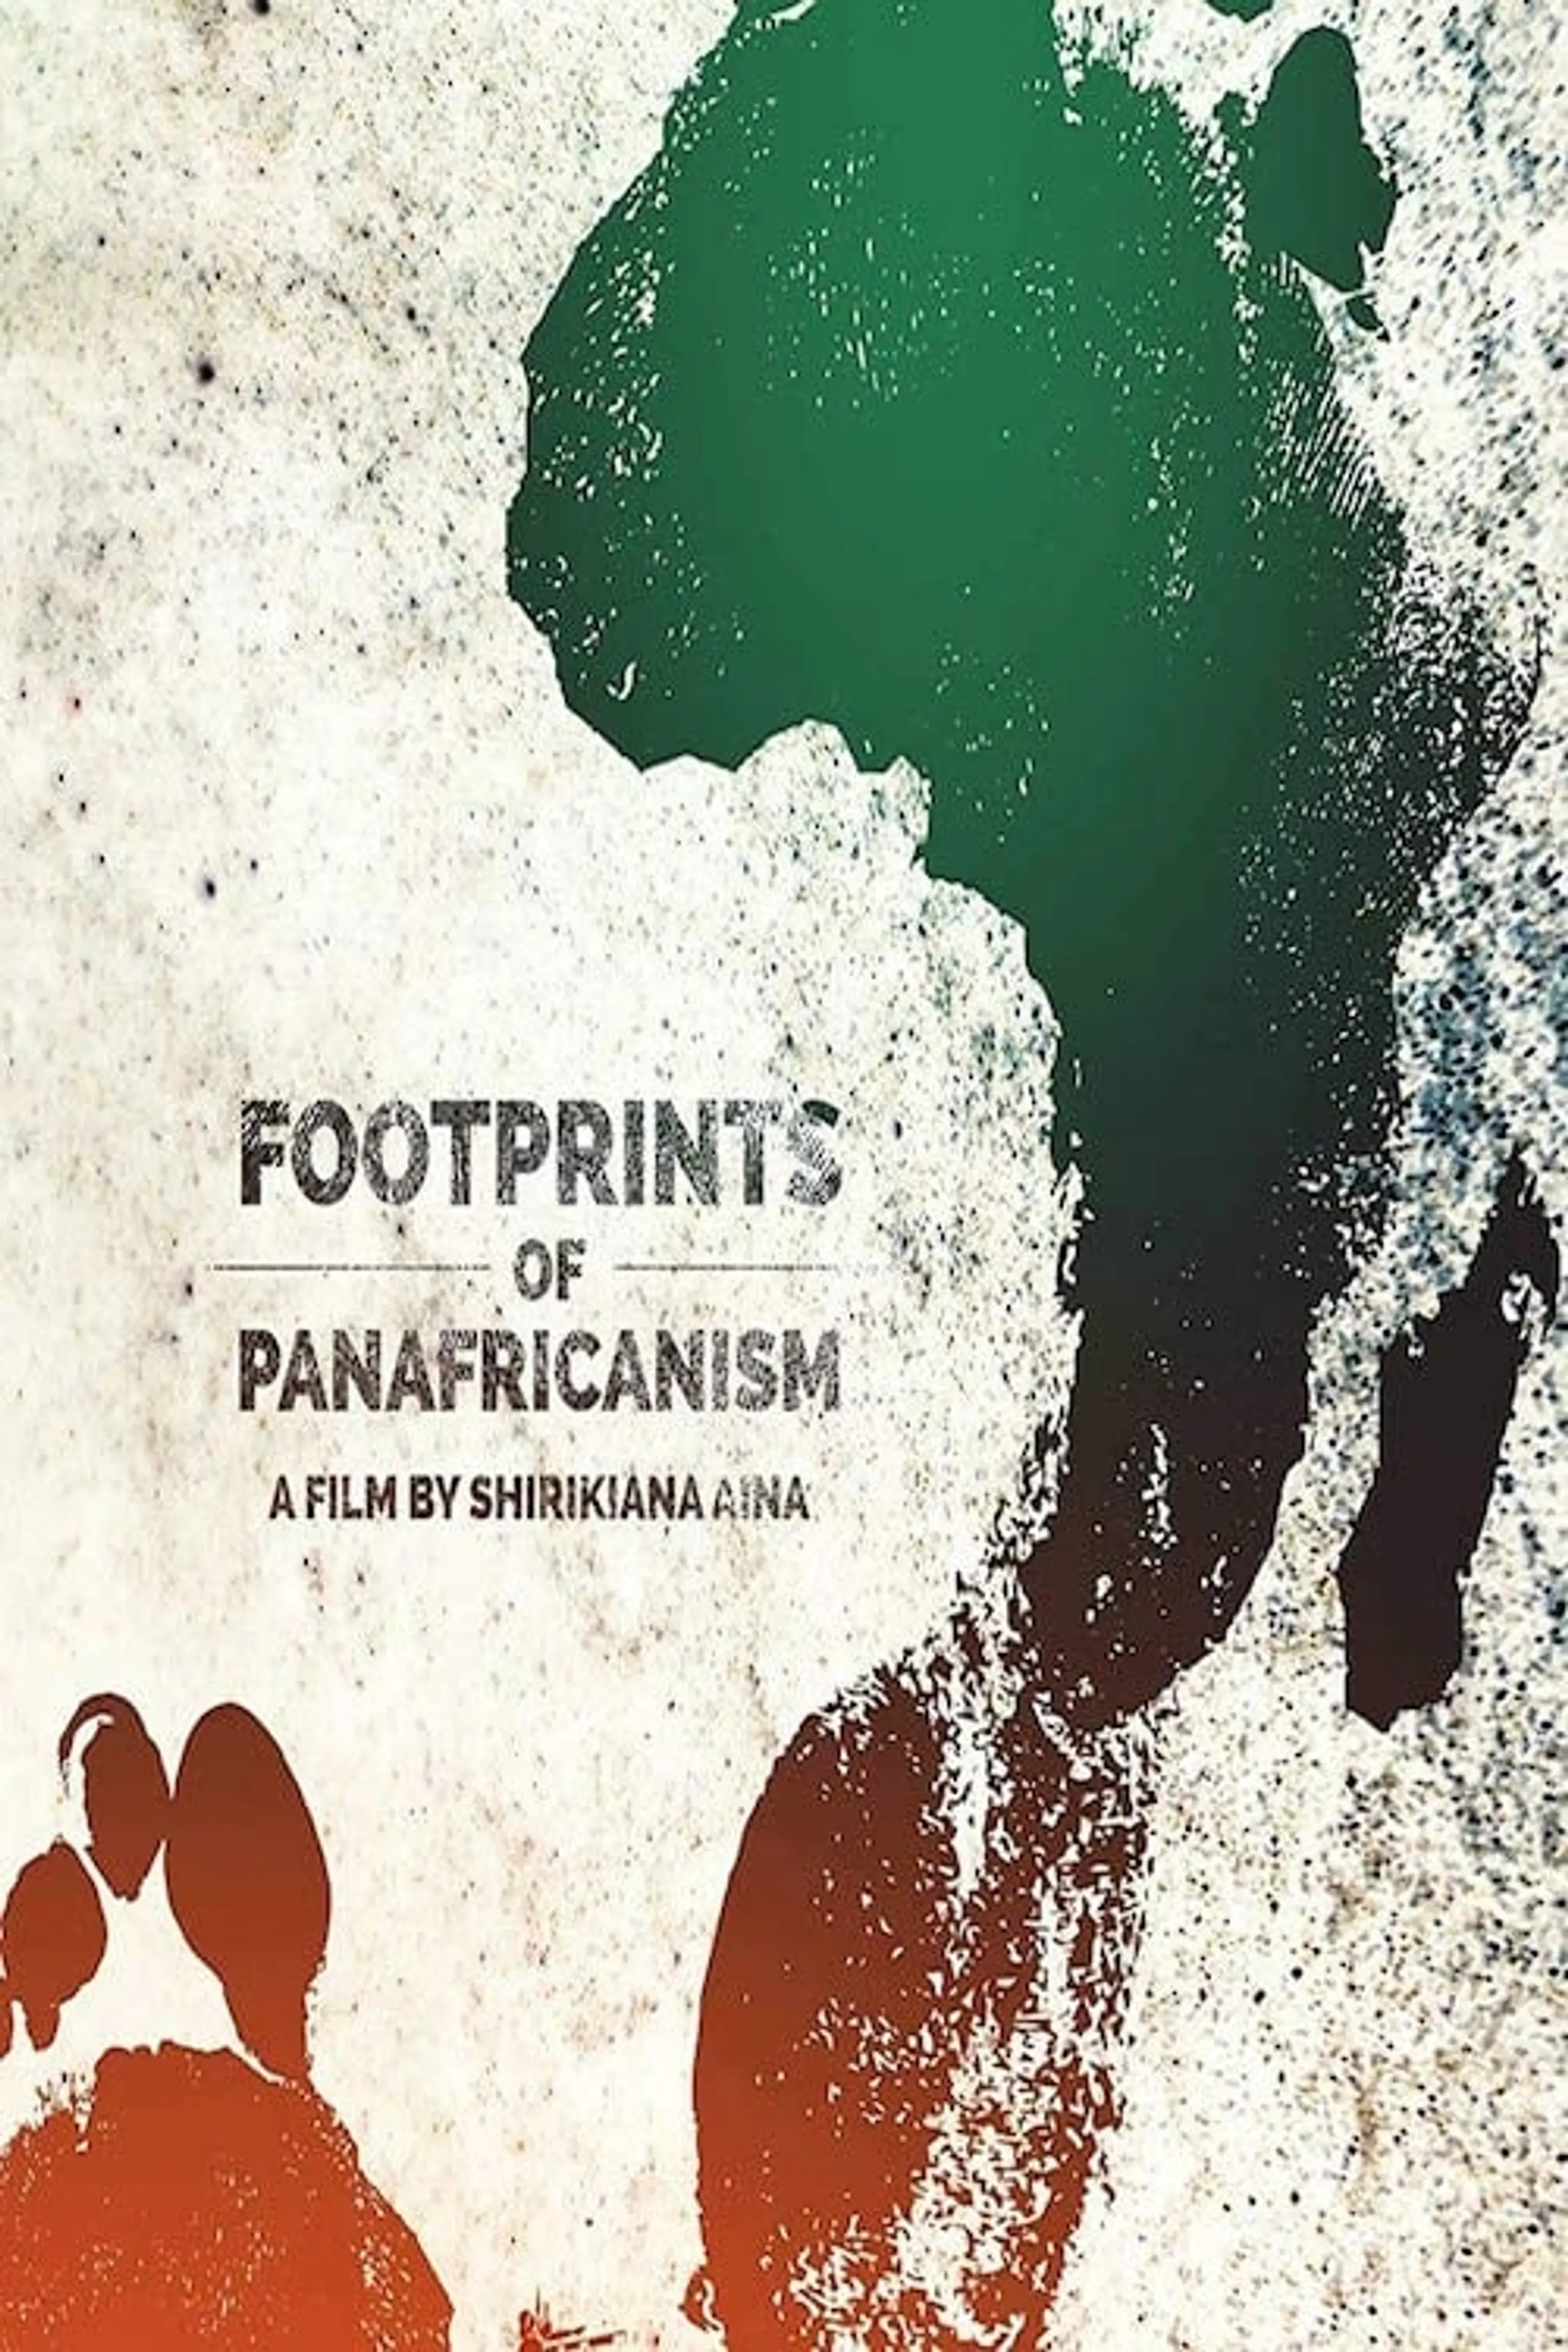 Footprints of Pan-Africanism